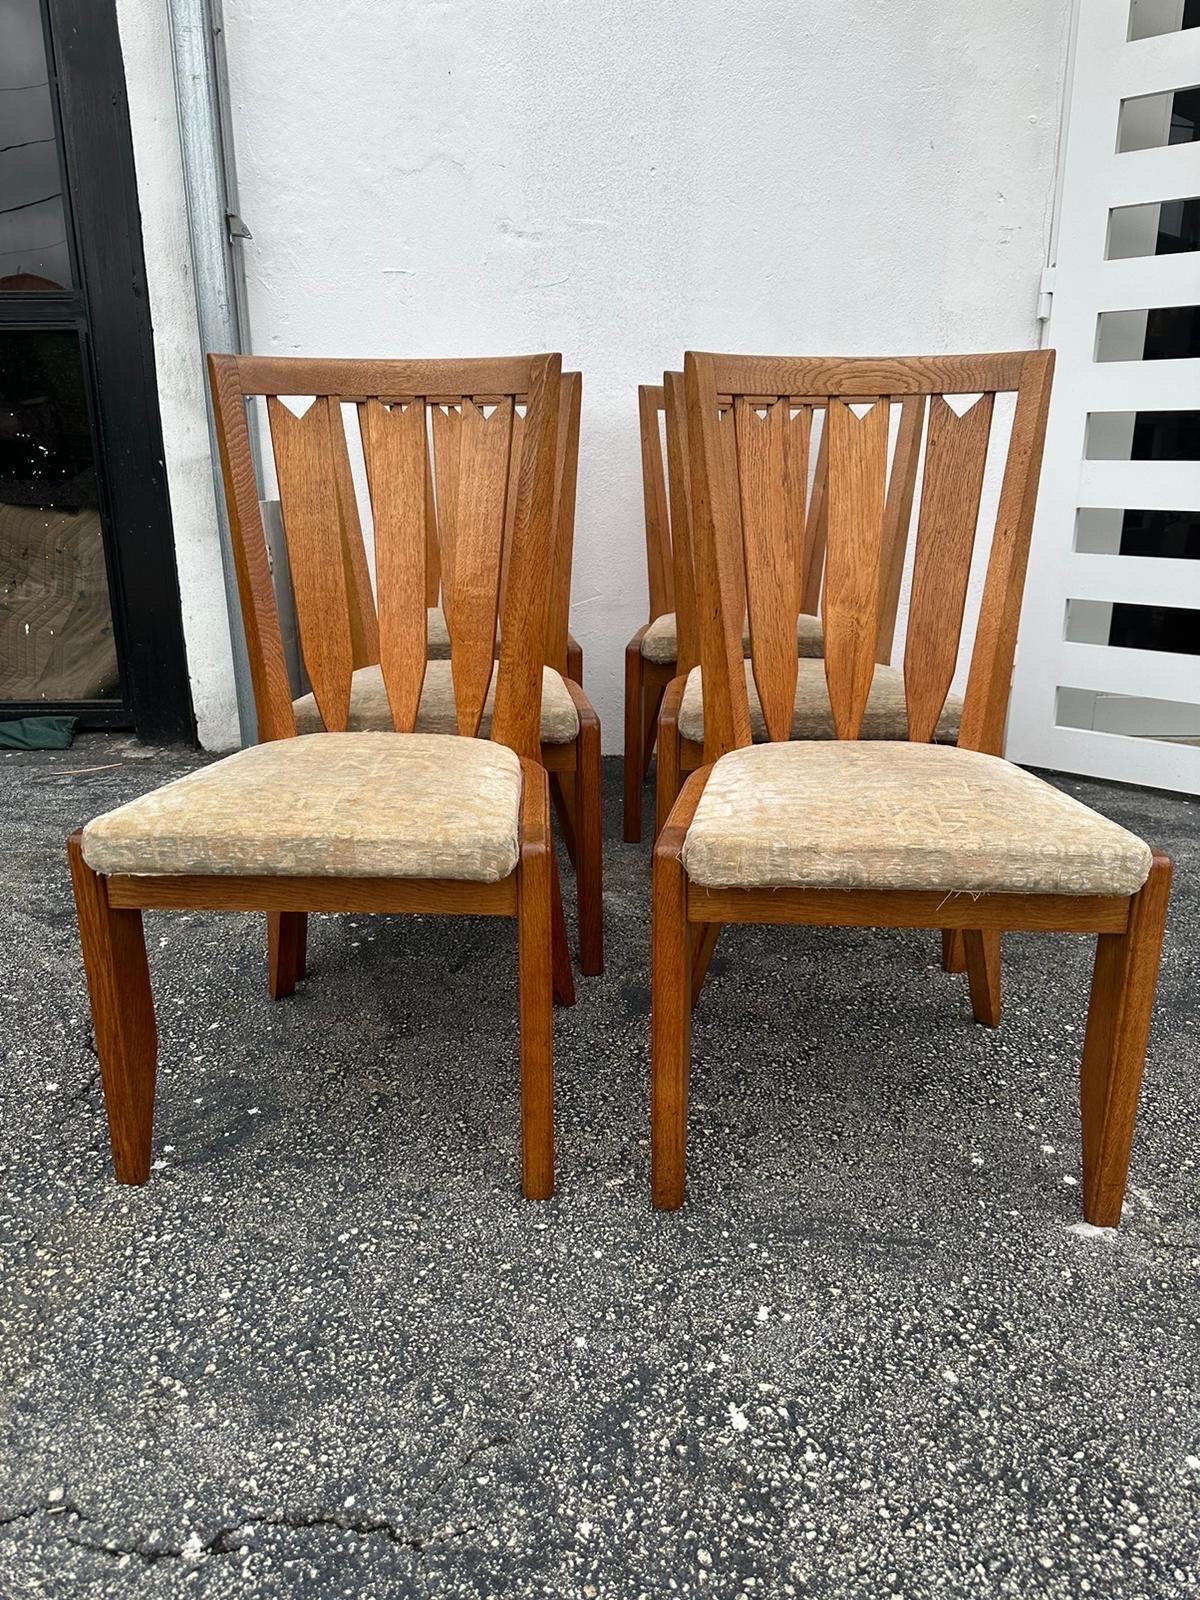 Chaises de salle à manger en chêne vintage conçues en 1965 par le célèbre duo français Robert Guillerme et Jacques Chambron.  Ces chaises de salle à manger expliquent parfaitement pourquoi, grâce à des proportions, des concepts uniques et une